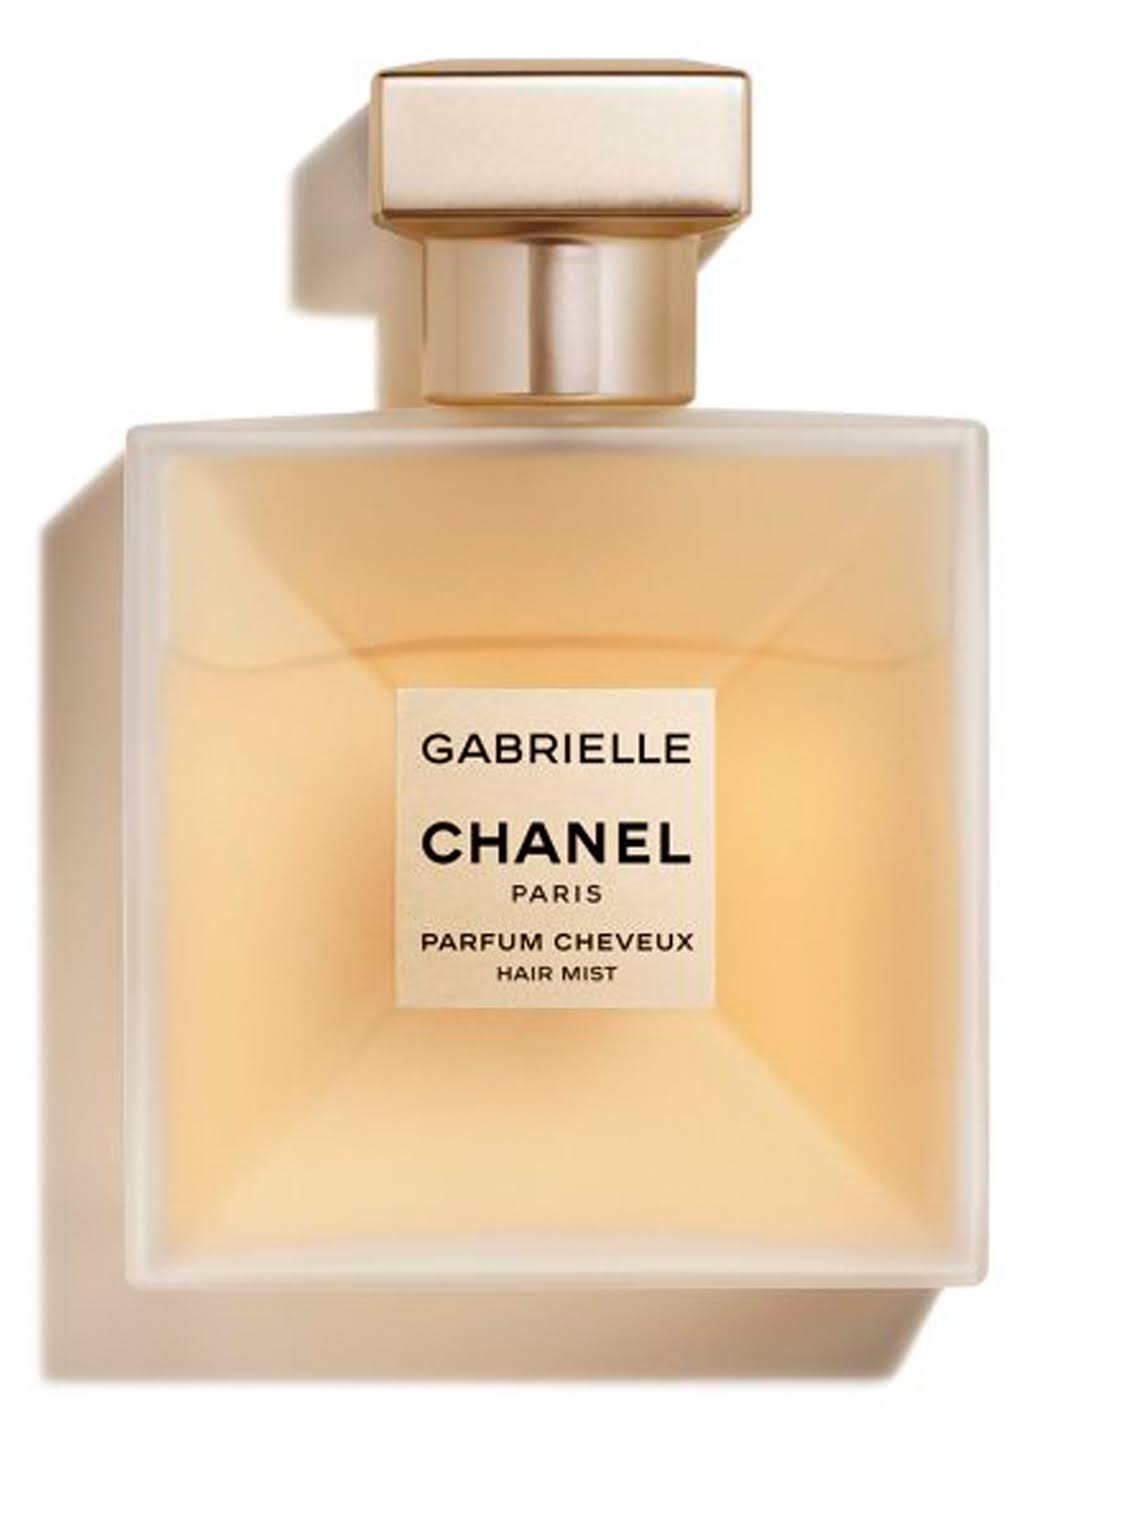 Chanel Gabrielle Hair Mist - 40ml